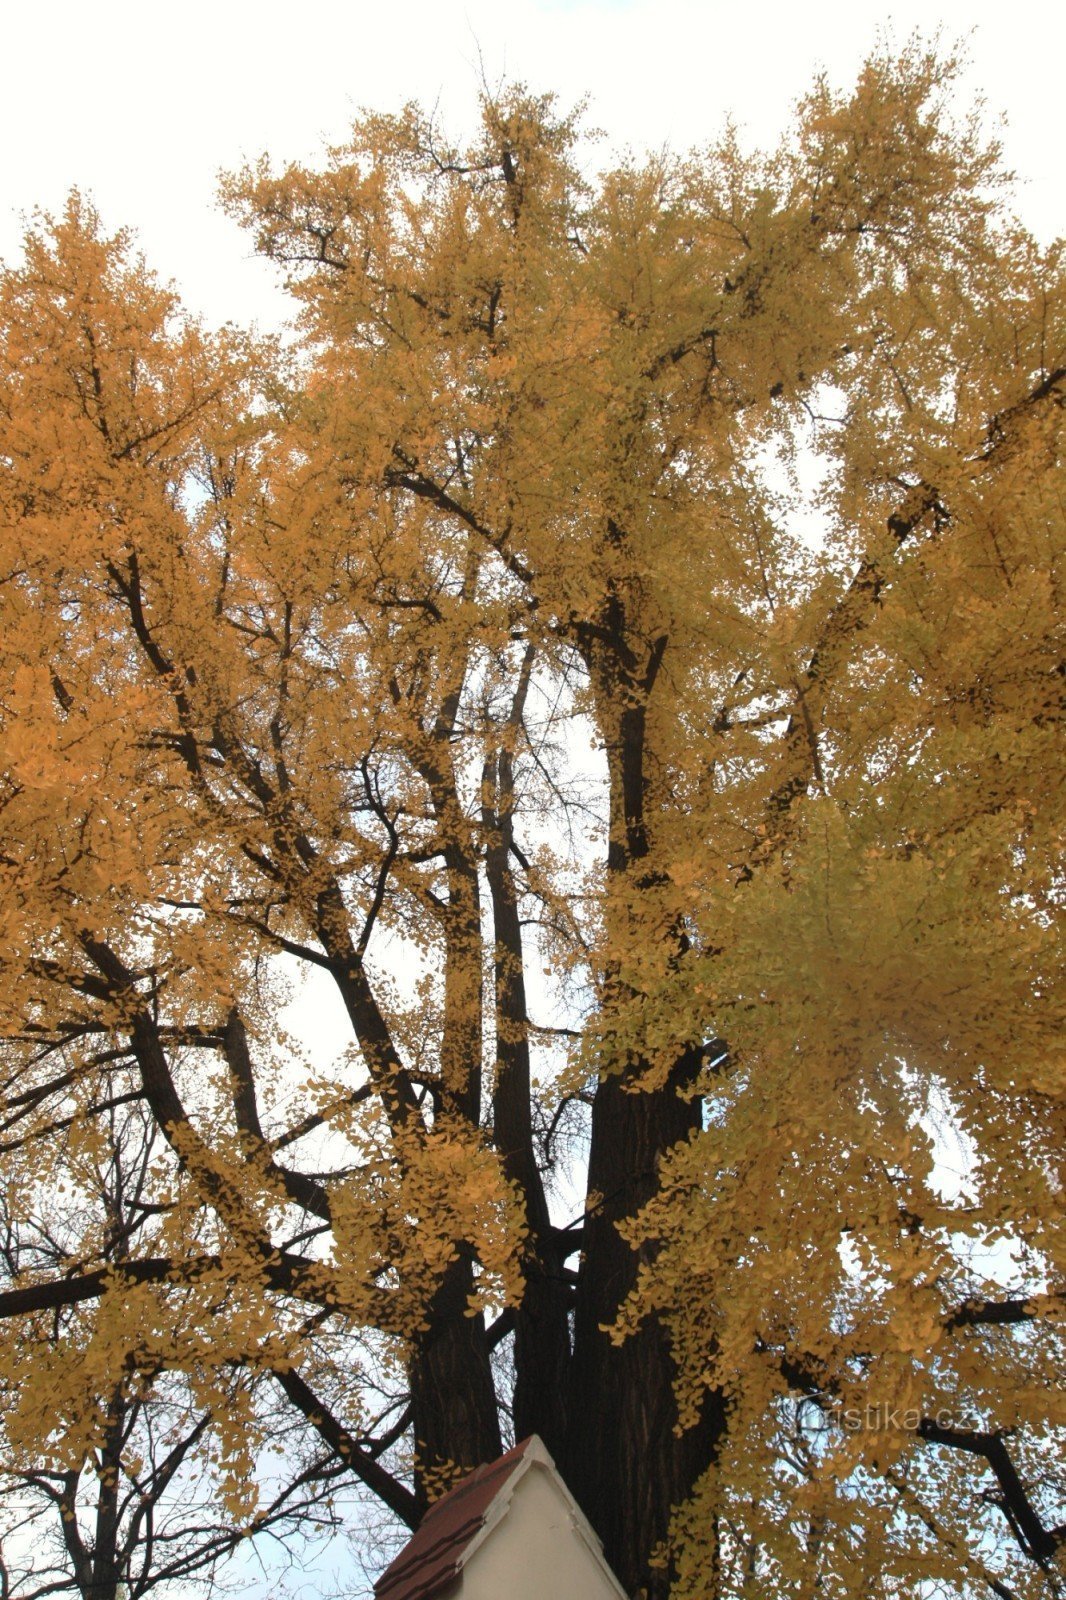 Una vista nella corona di un albero